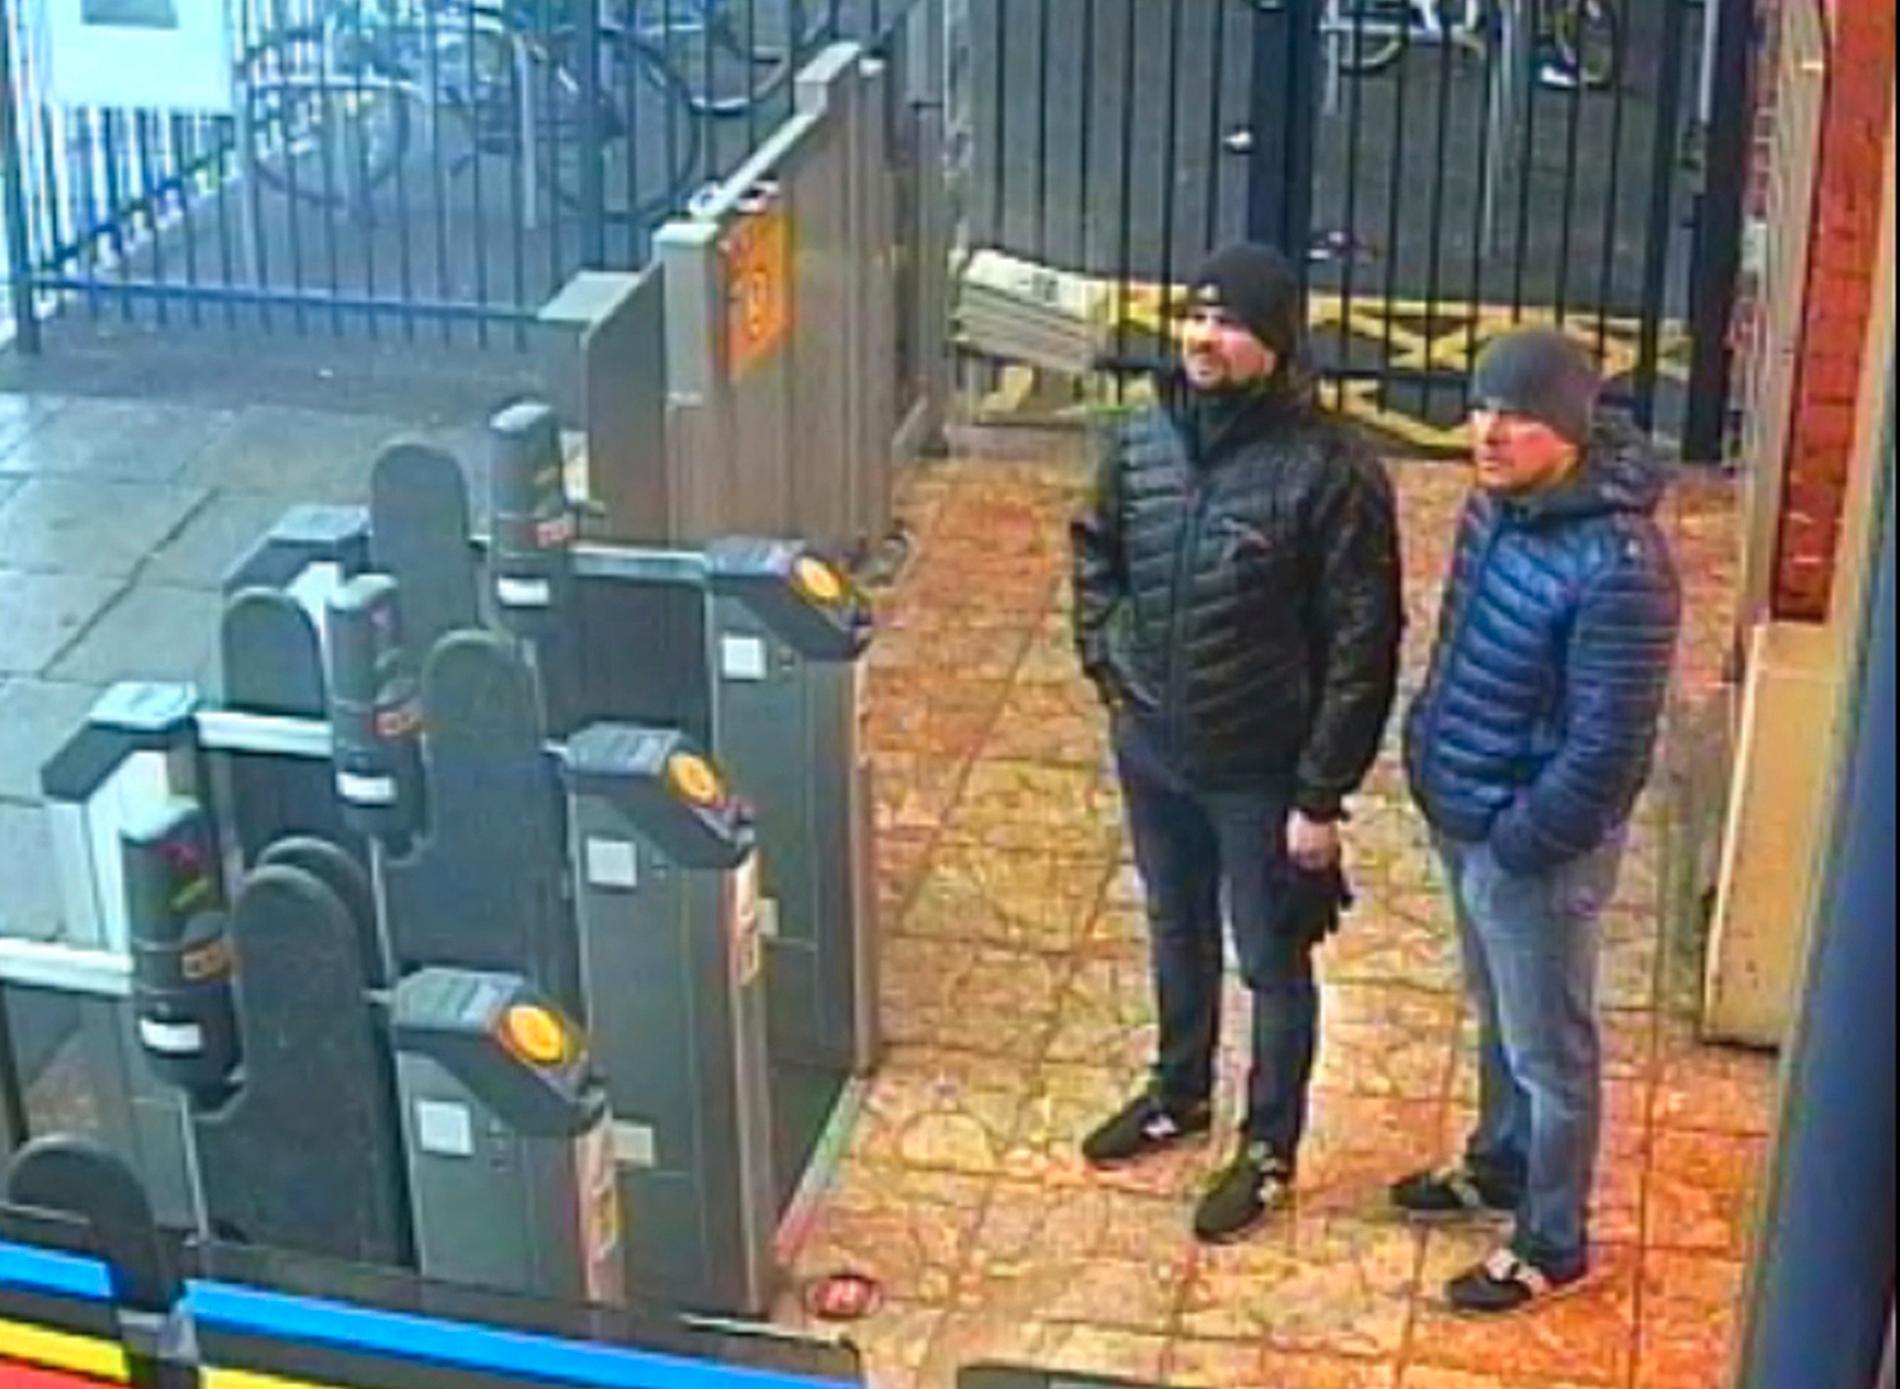 ”Ruslan Boshirov” och ”Alexander Petrov” på tågstationen i Salisbury den 3 mars 2018.